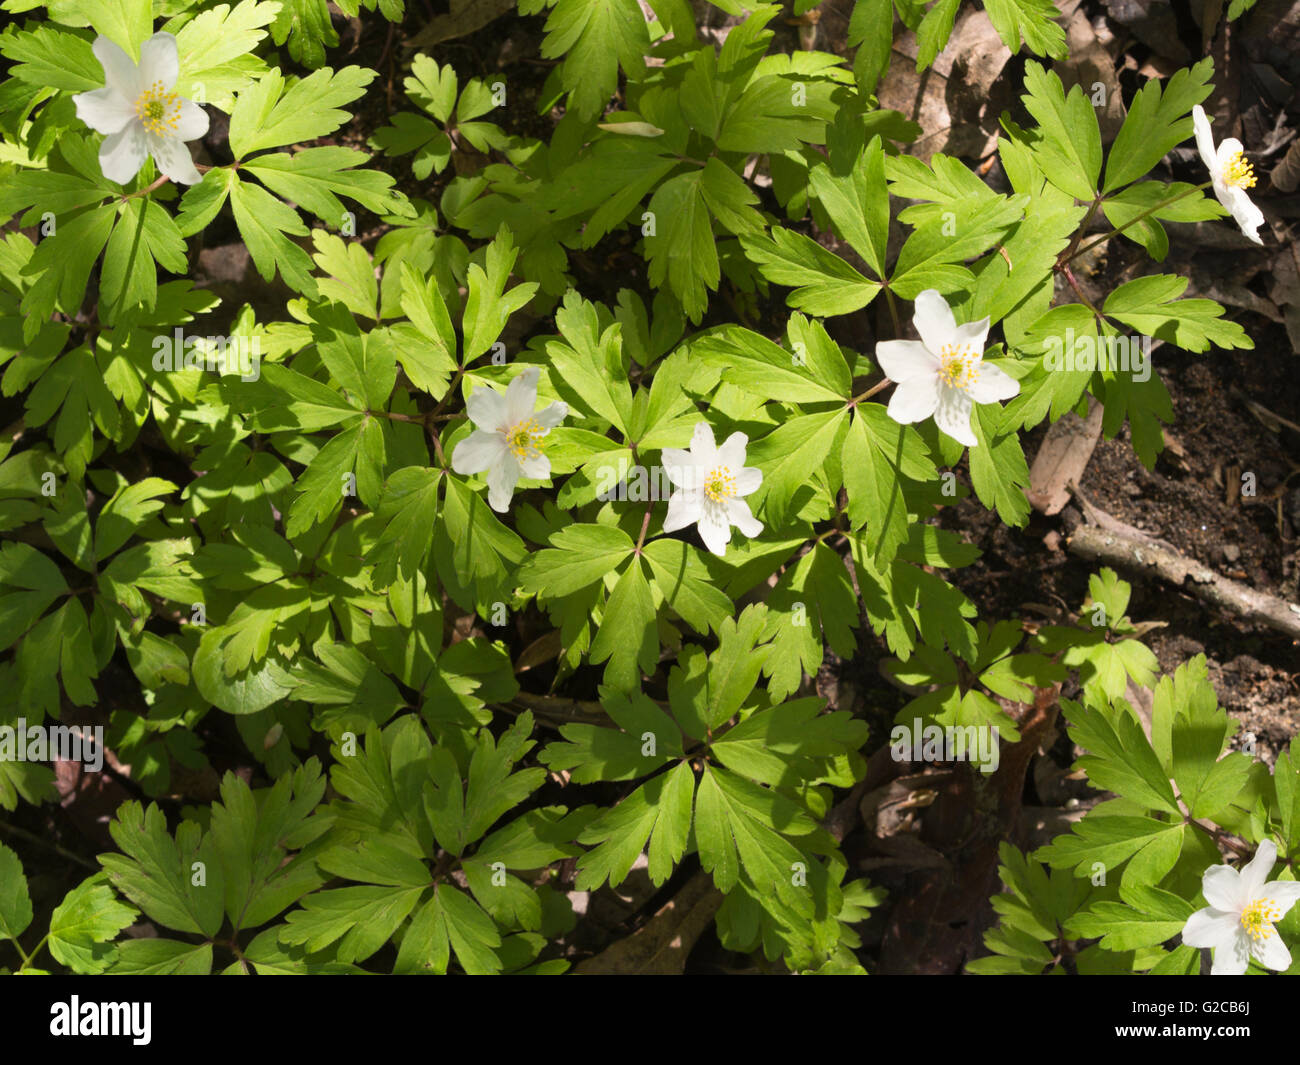 Legno anemone, o Anemone nemorosa , dettaglio da una primavera forest floor in Norvegia Foto Stock